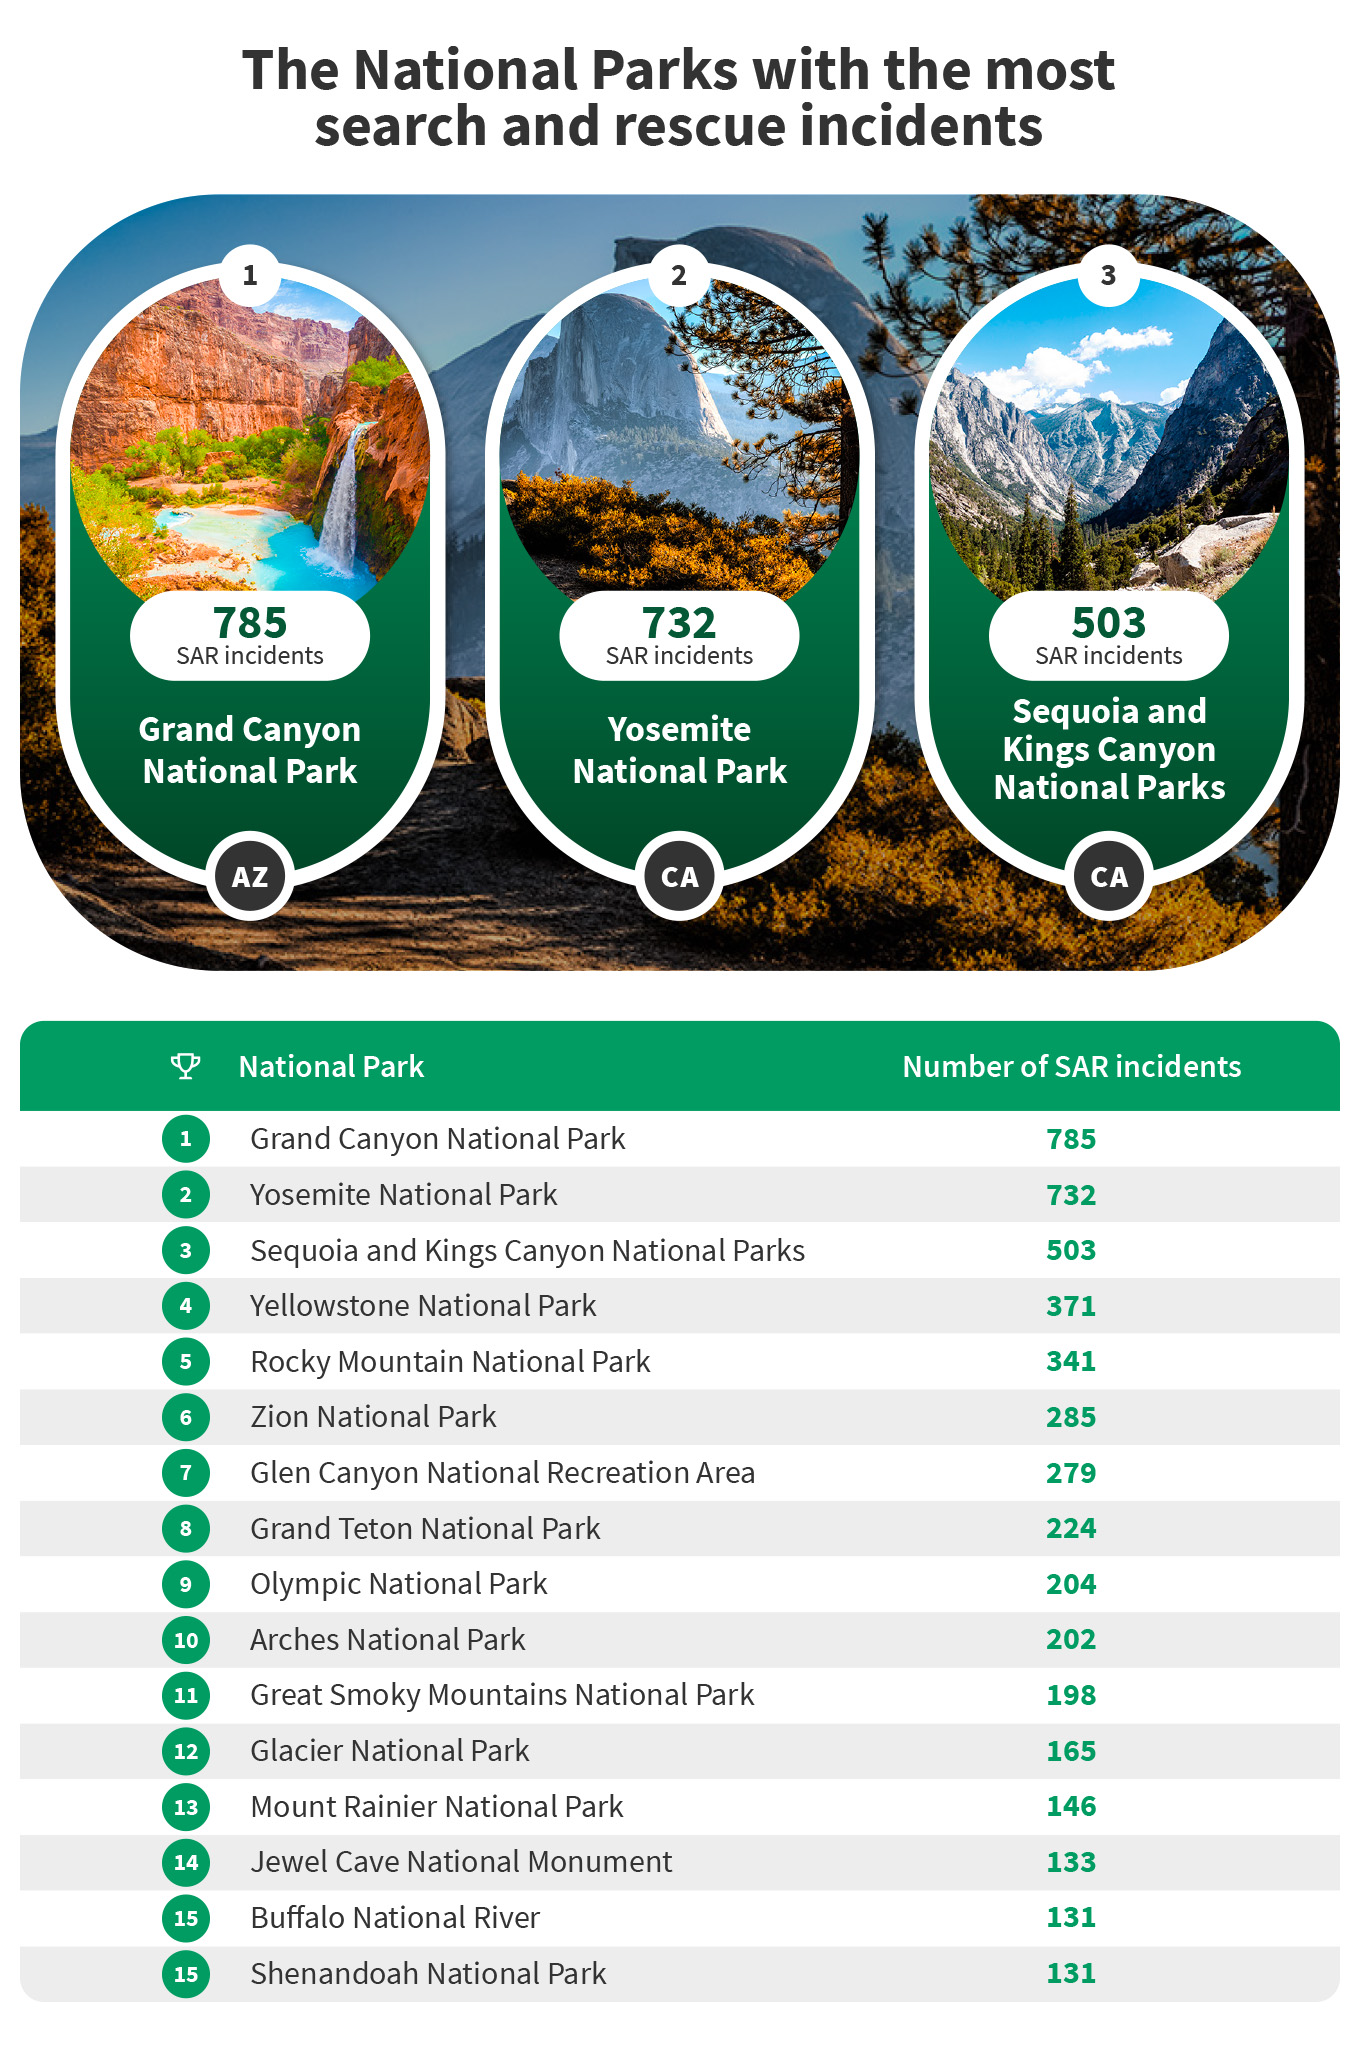 Parques nacionales de EE. UU. Con los más altos incidentes de búsqueda y rescate - 3